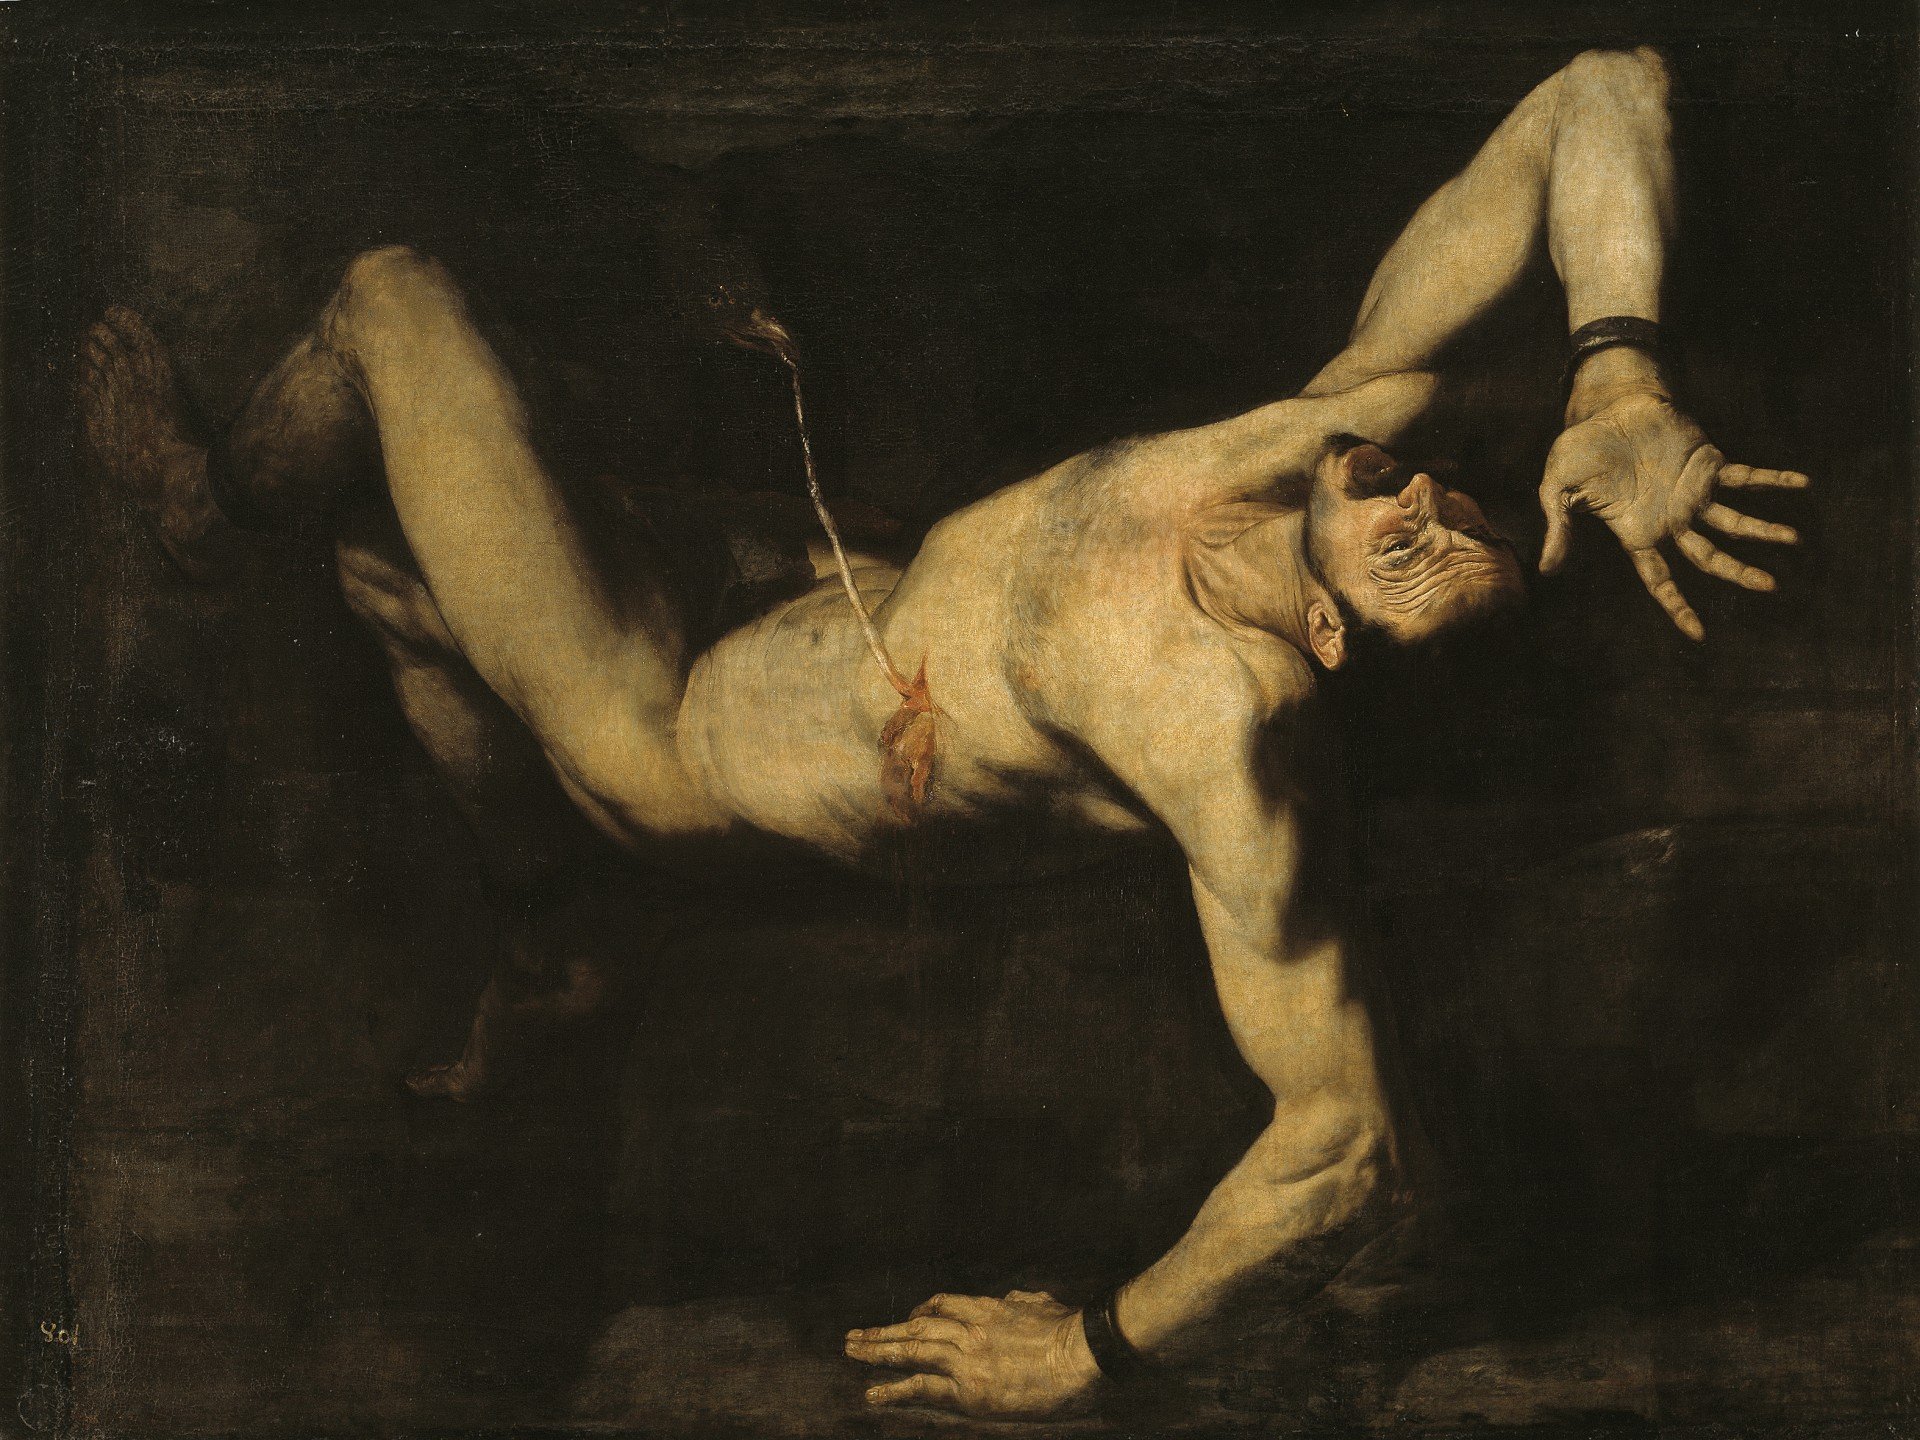 “Tityus”, José de Ribera, Oil on canvas, 227 x 301 cm, 1632 Madrid, Museo Nacional del Prado